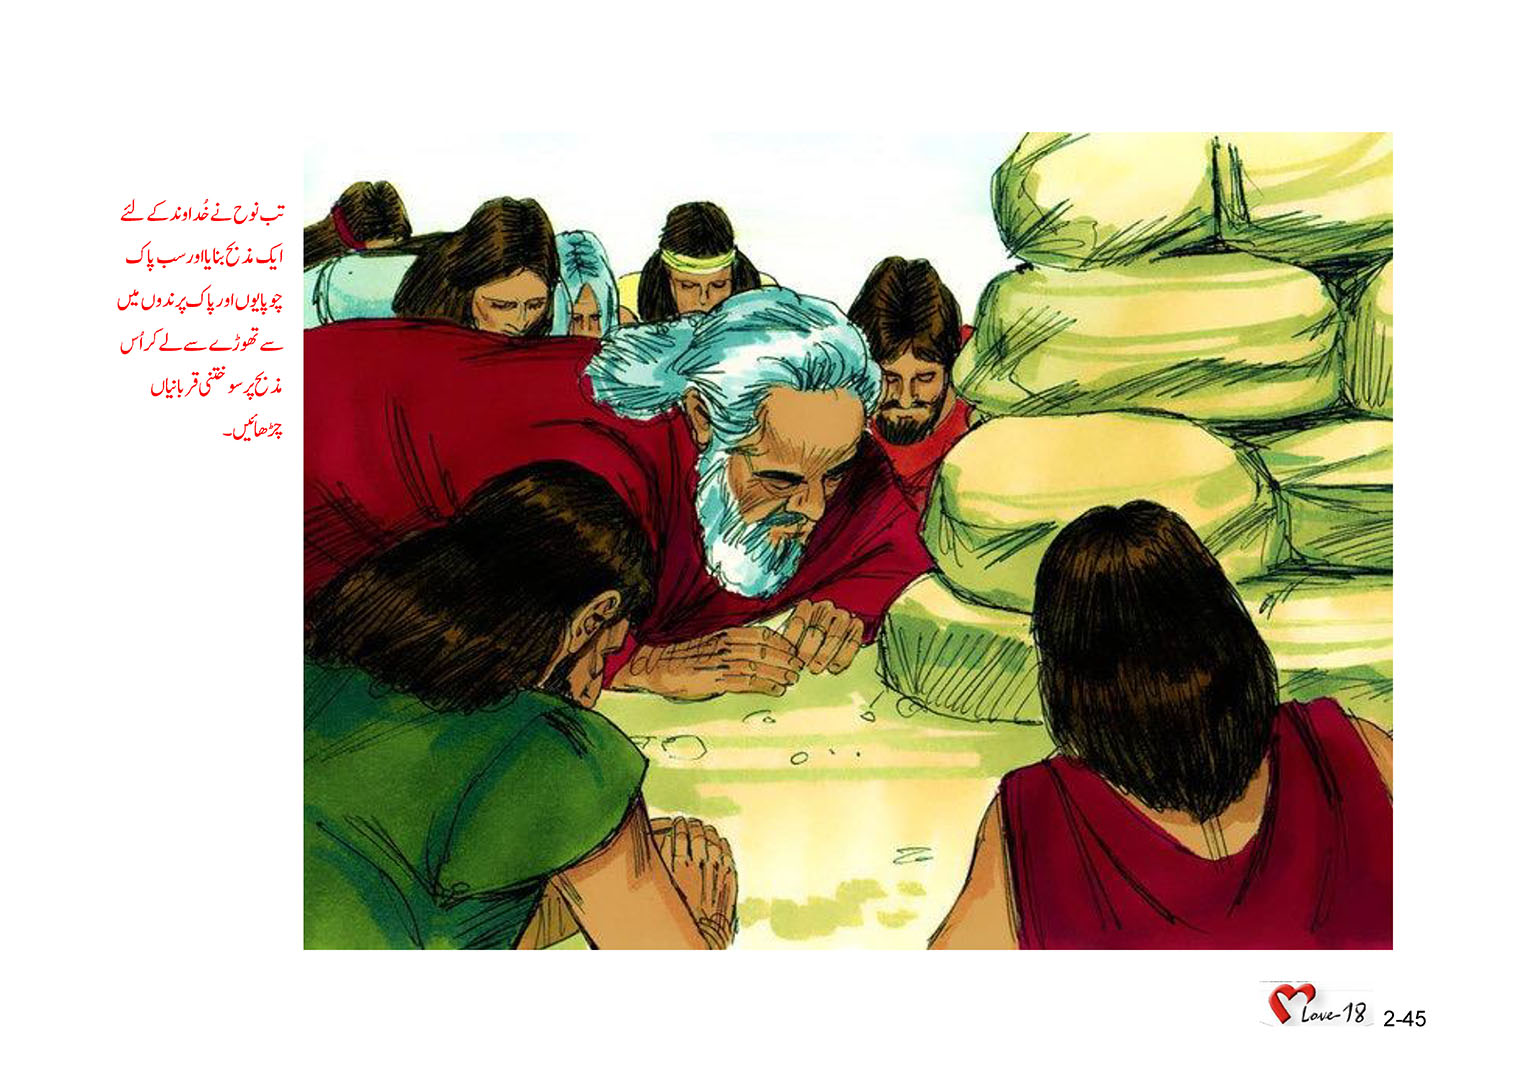 باب 2 - سبق 4 - نوح کی کشتی